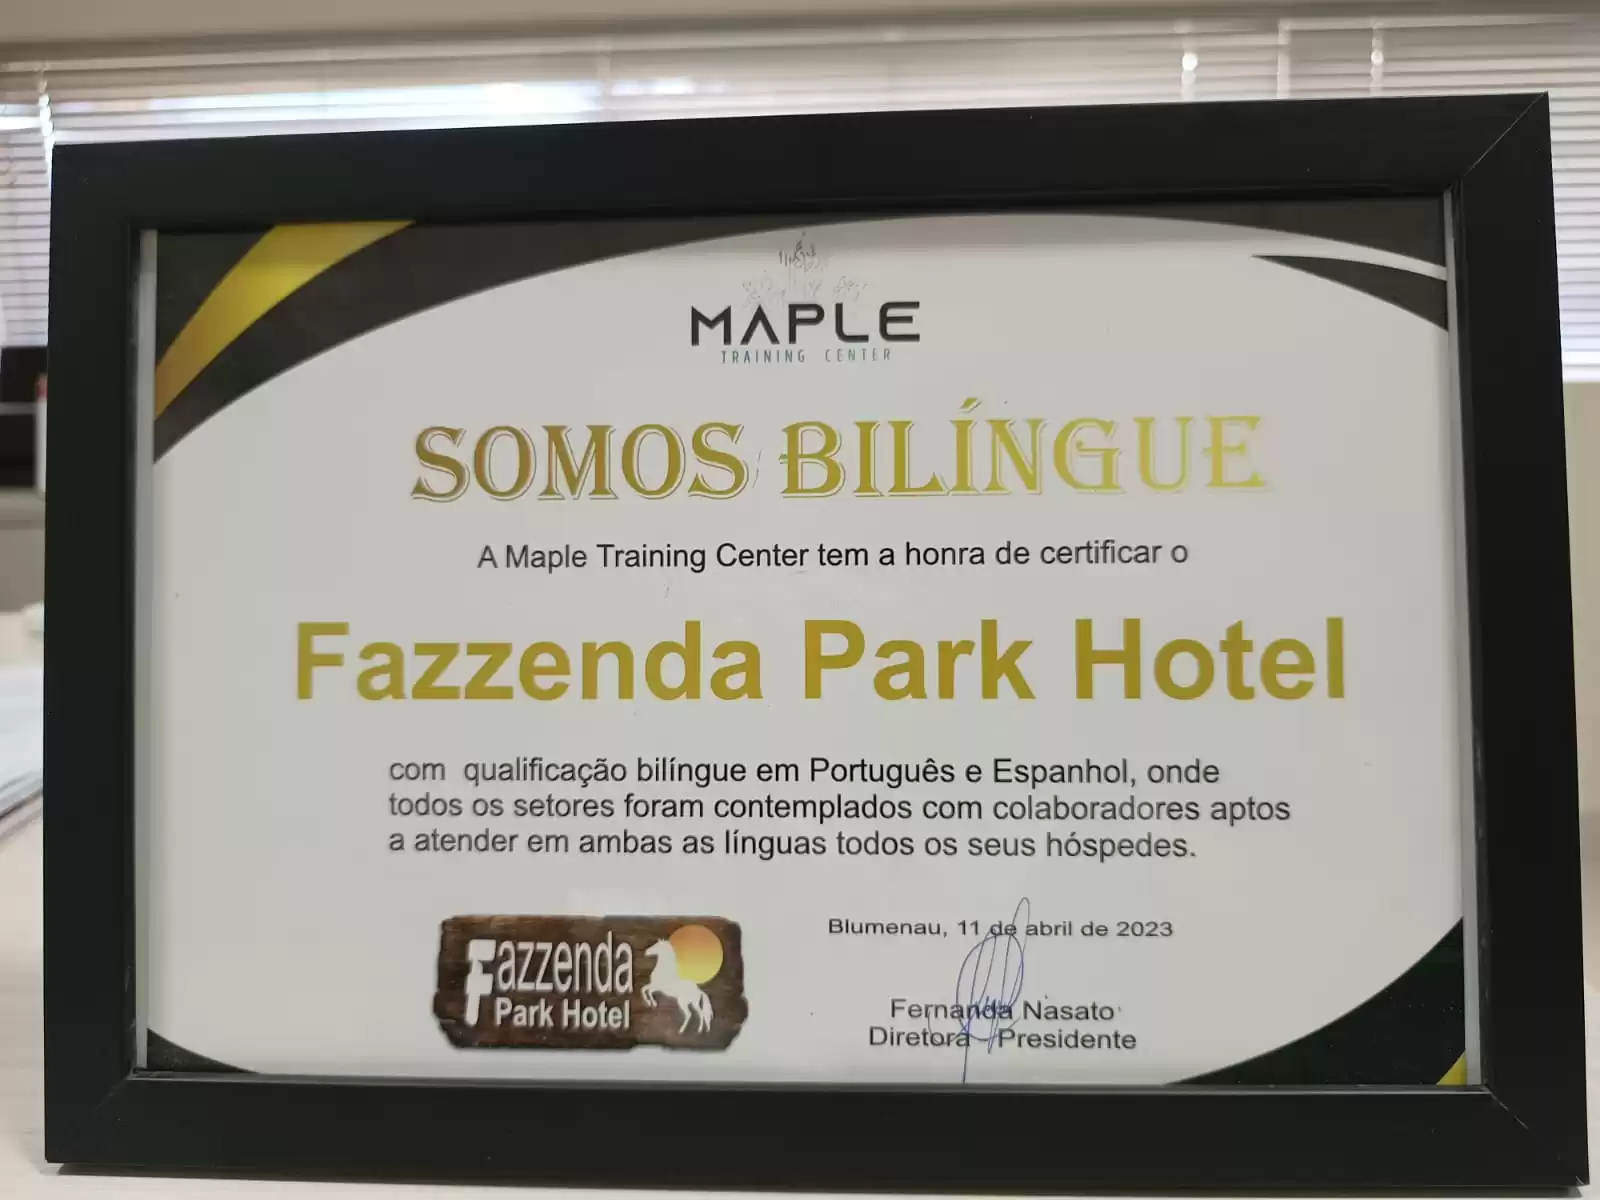  Fazzenda Park Hotel se torna resort bilíngue através de certificação